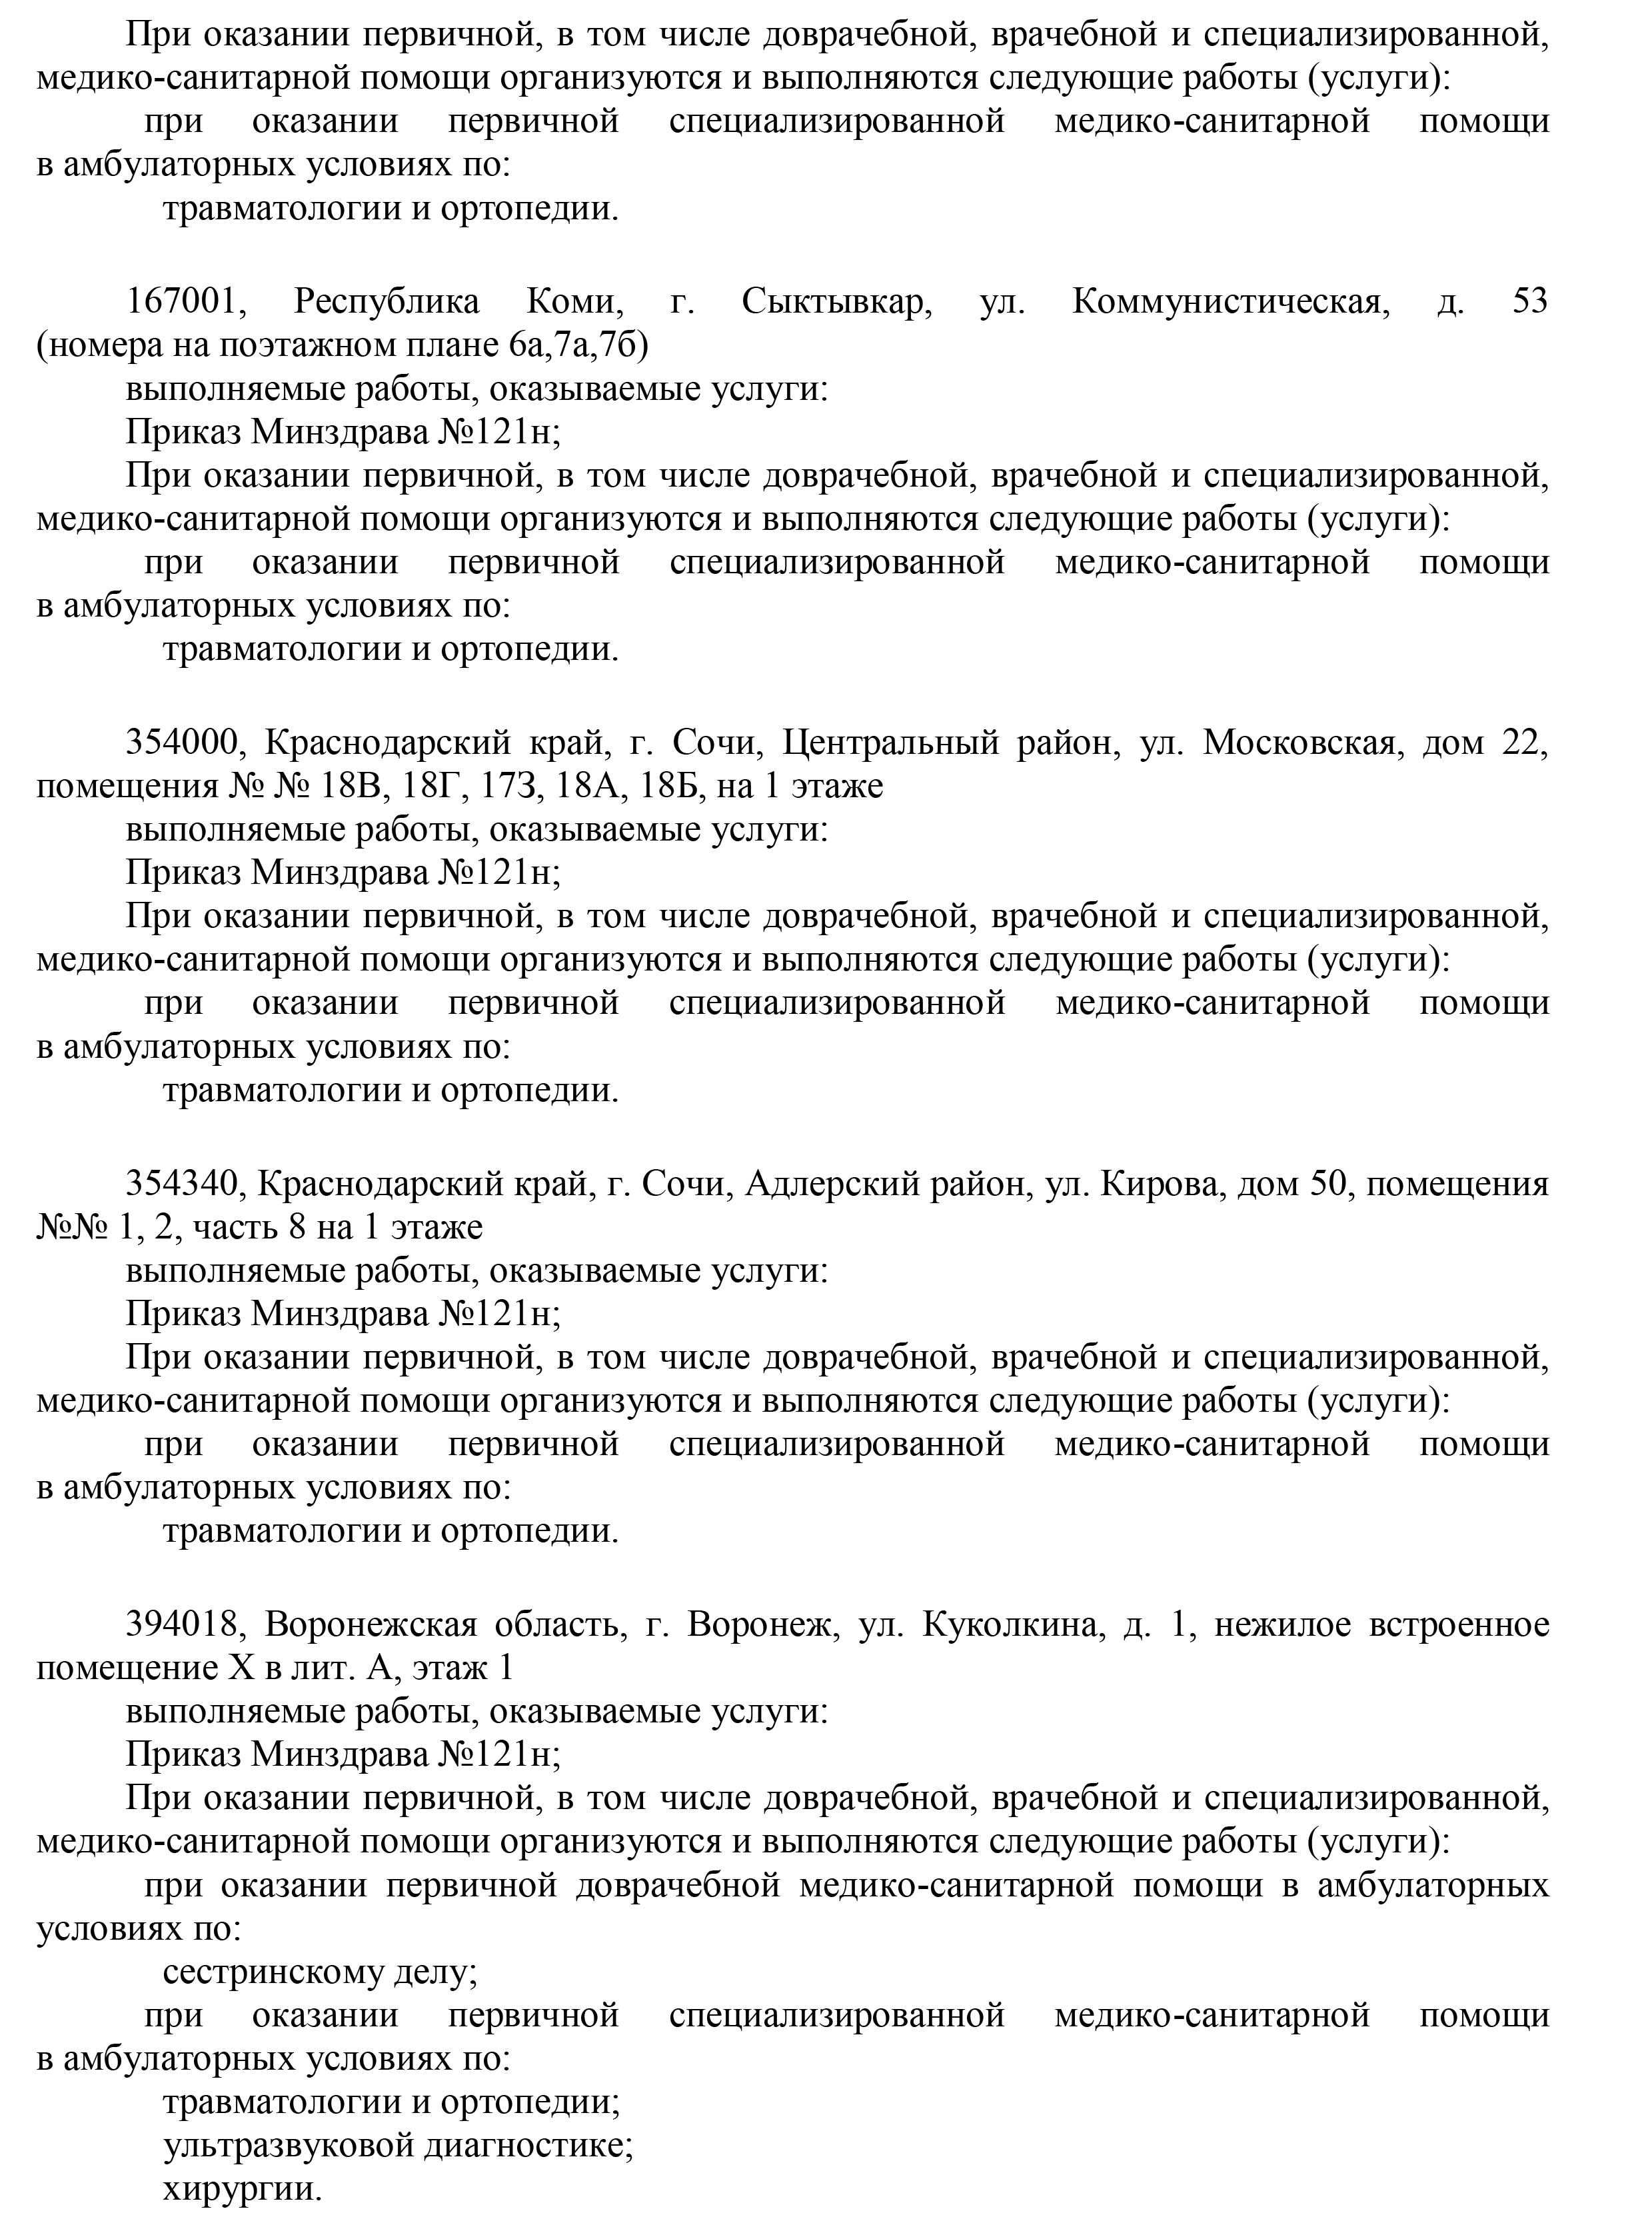 Лицензия Москва стр.17